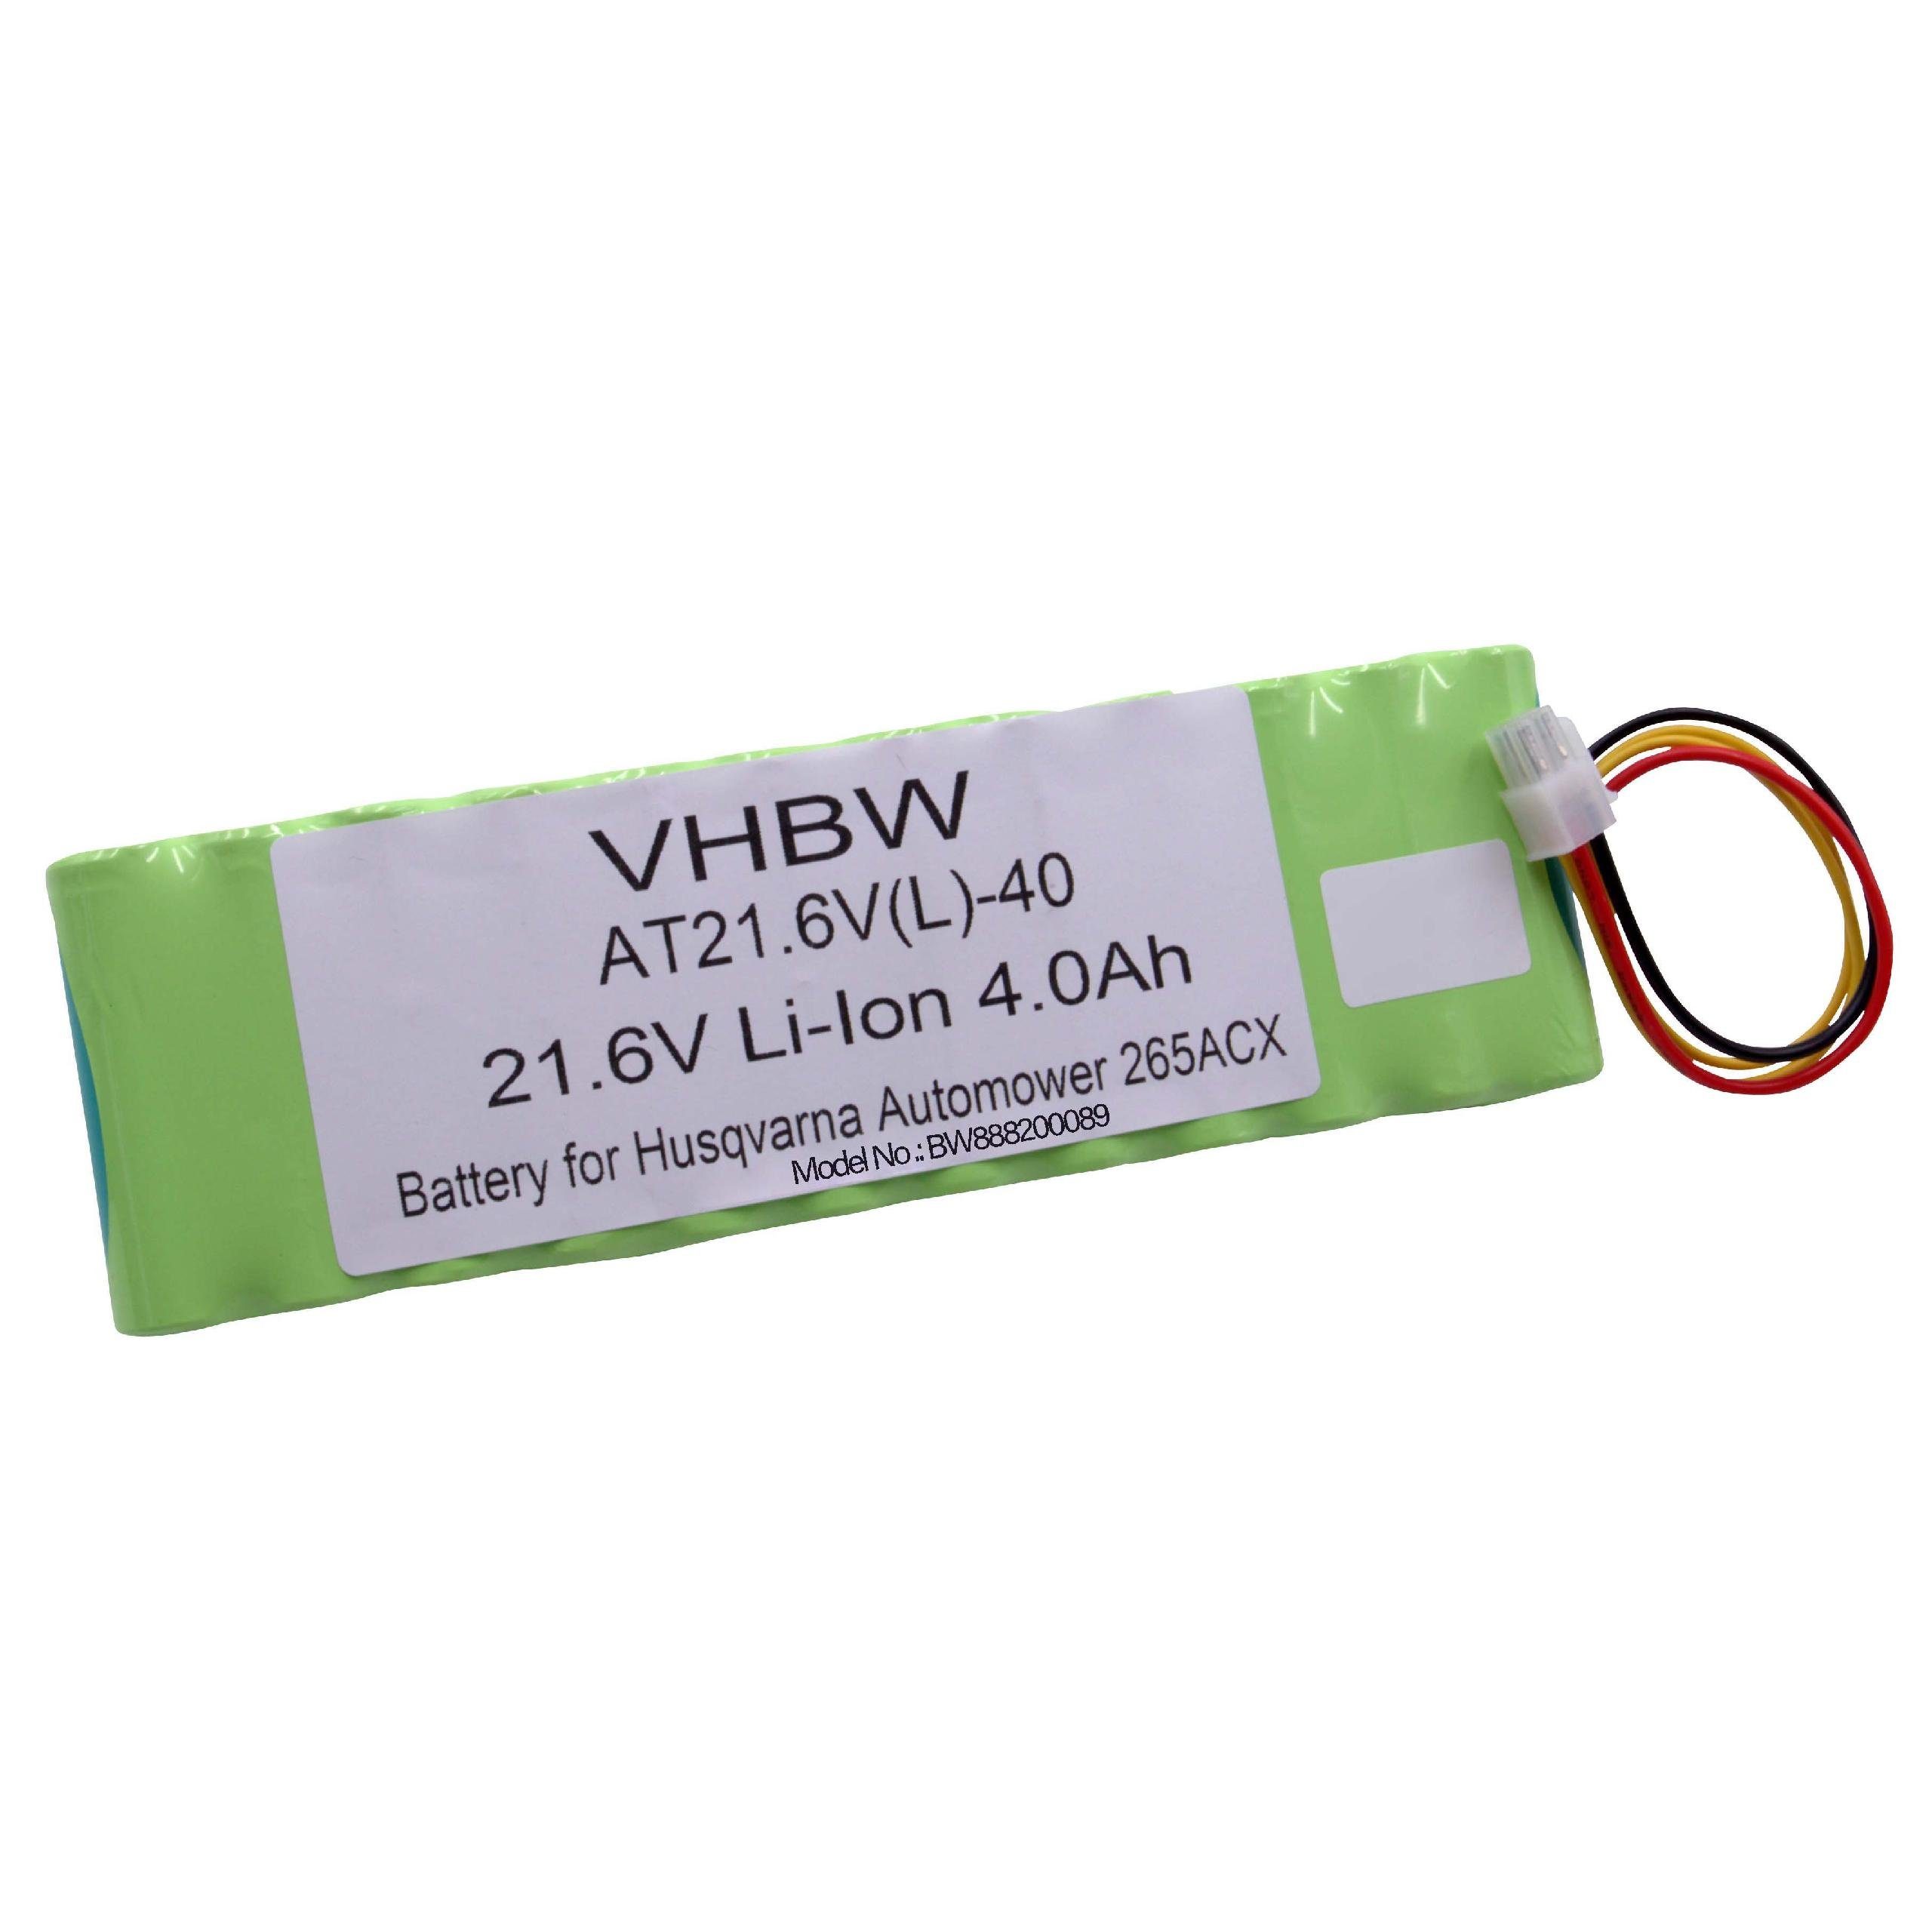 vhbw kompatibel mit Husqvarna Automower 265 ACX 2015 Akku Li-Ion 4000 mAh (21,6 V)